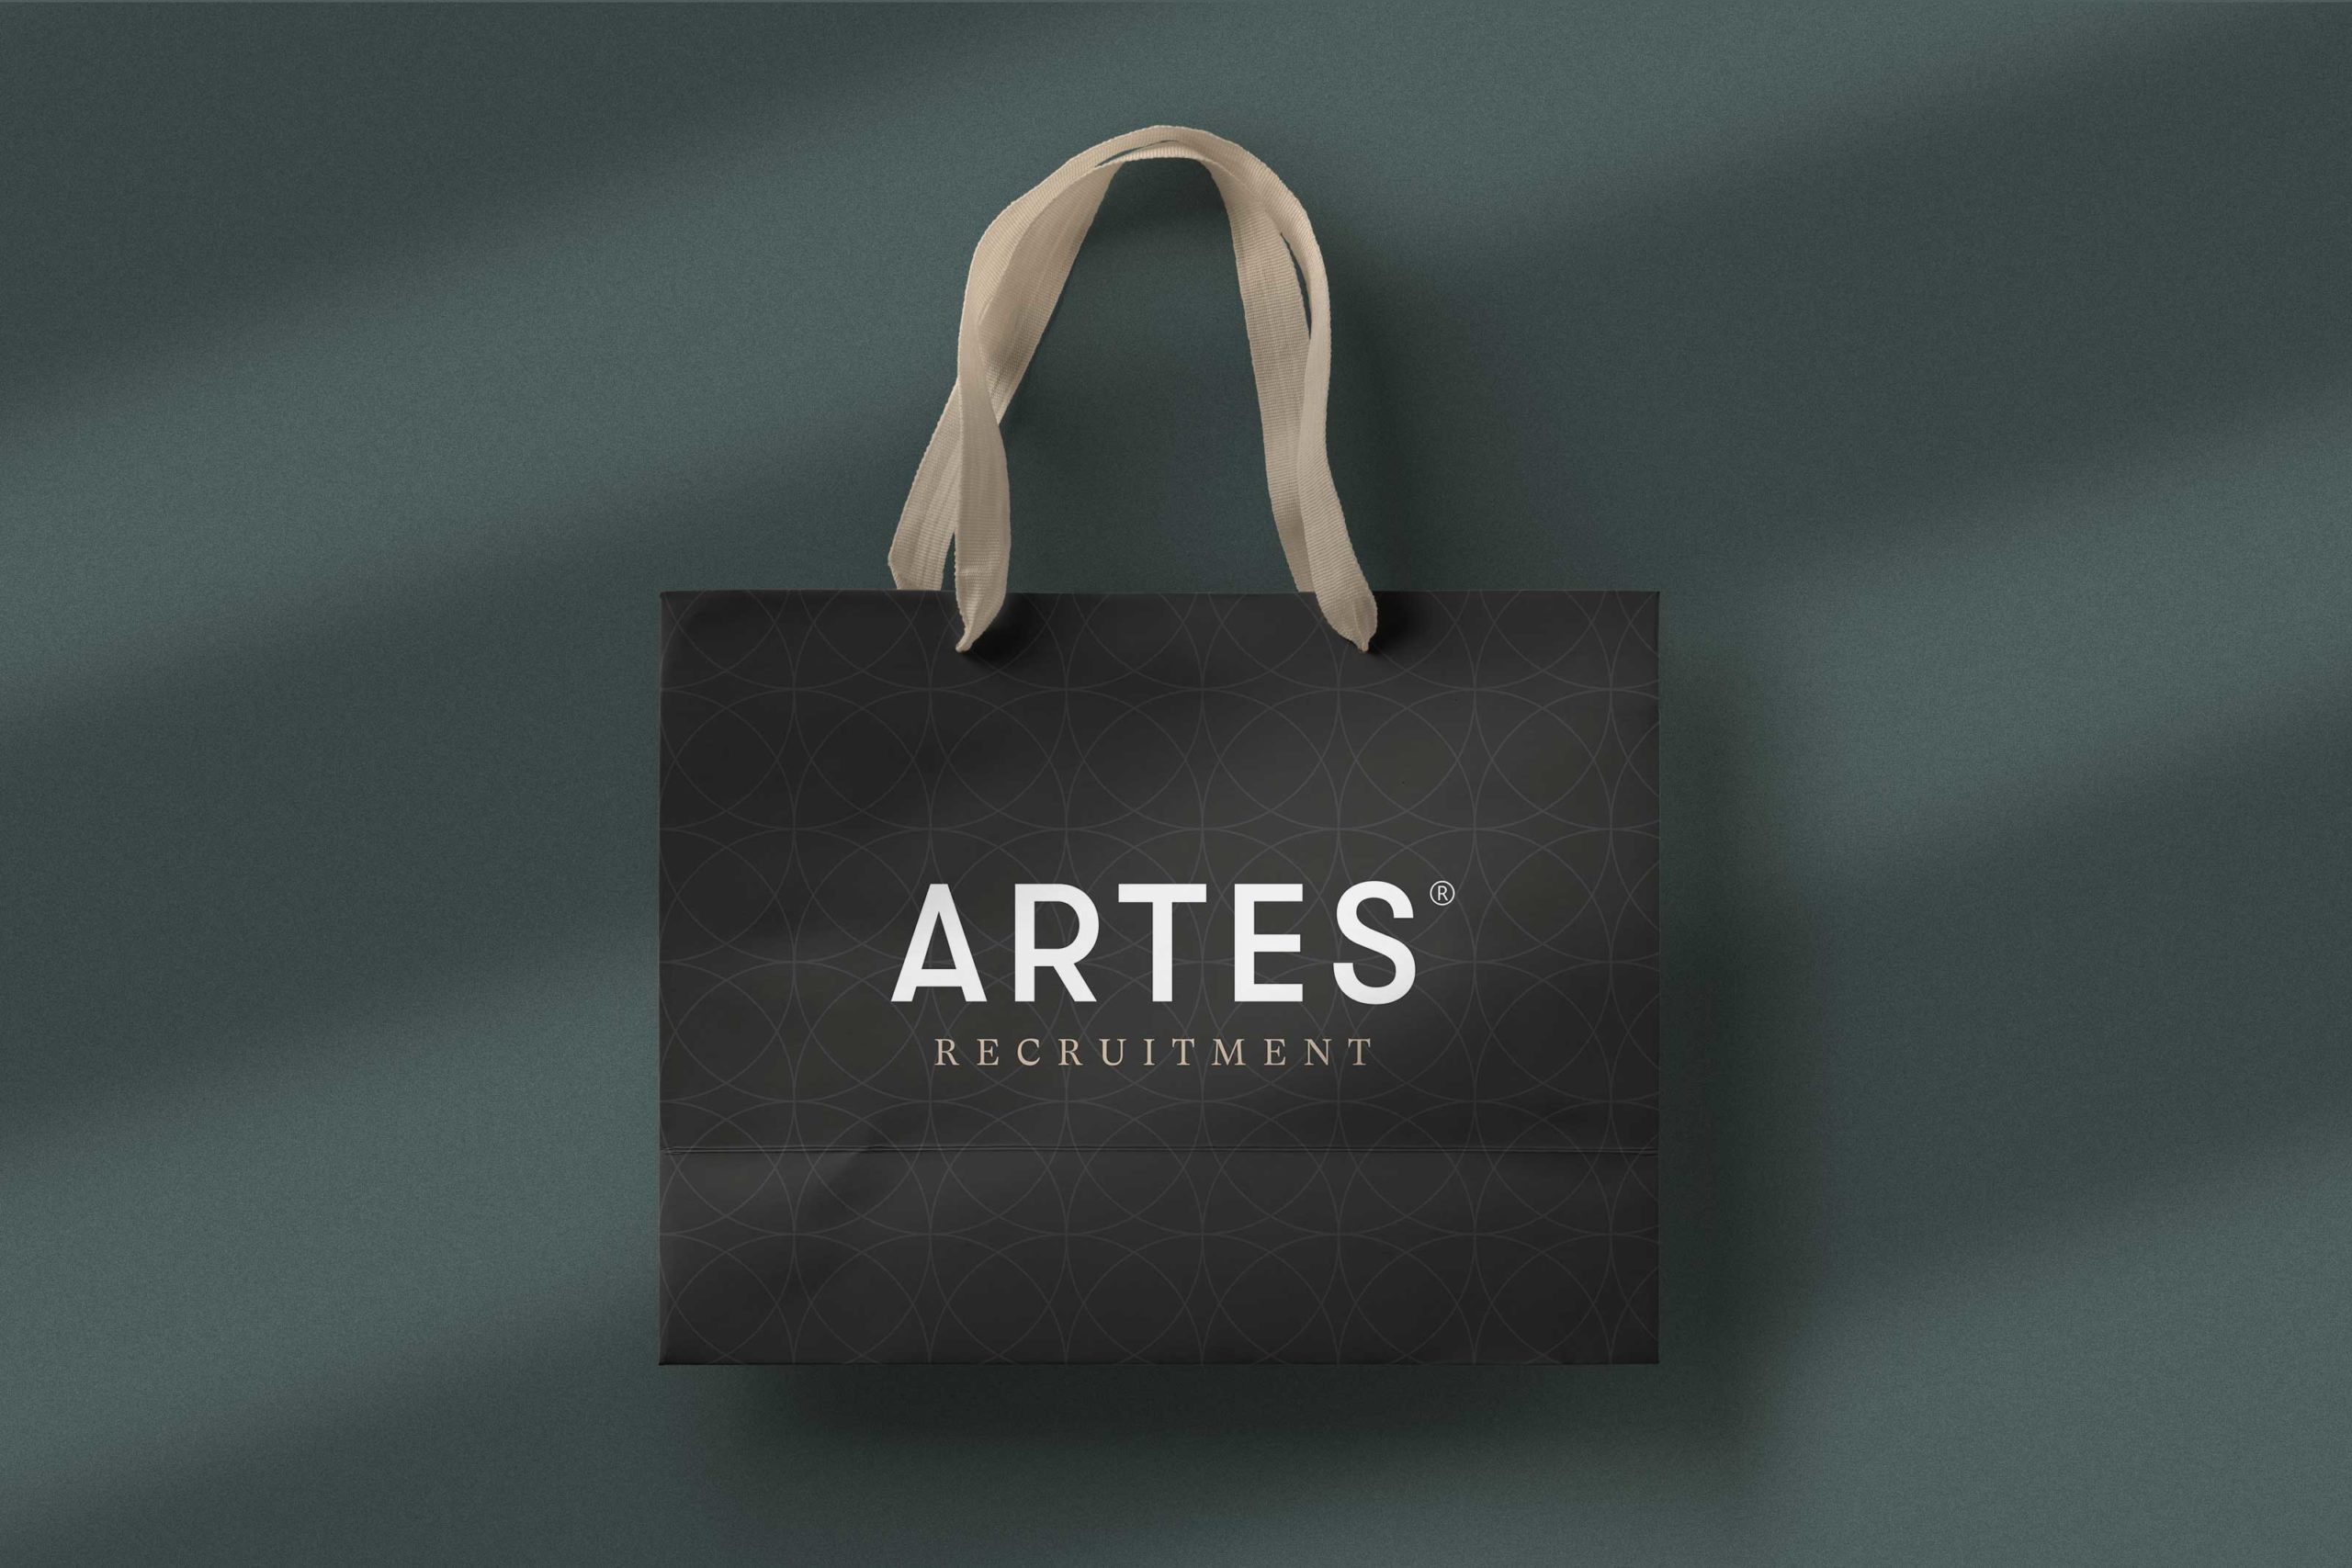 ARTES Recruitment Corporate Design, Corporate Design Agentur, Designagentur Frankfurt, Grafikdesign, Logodesign, Branding, Webdesign